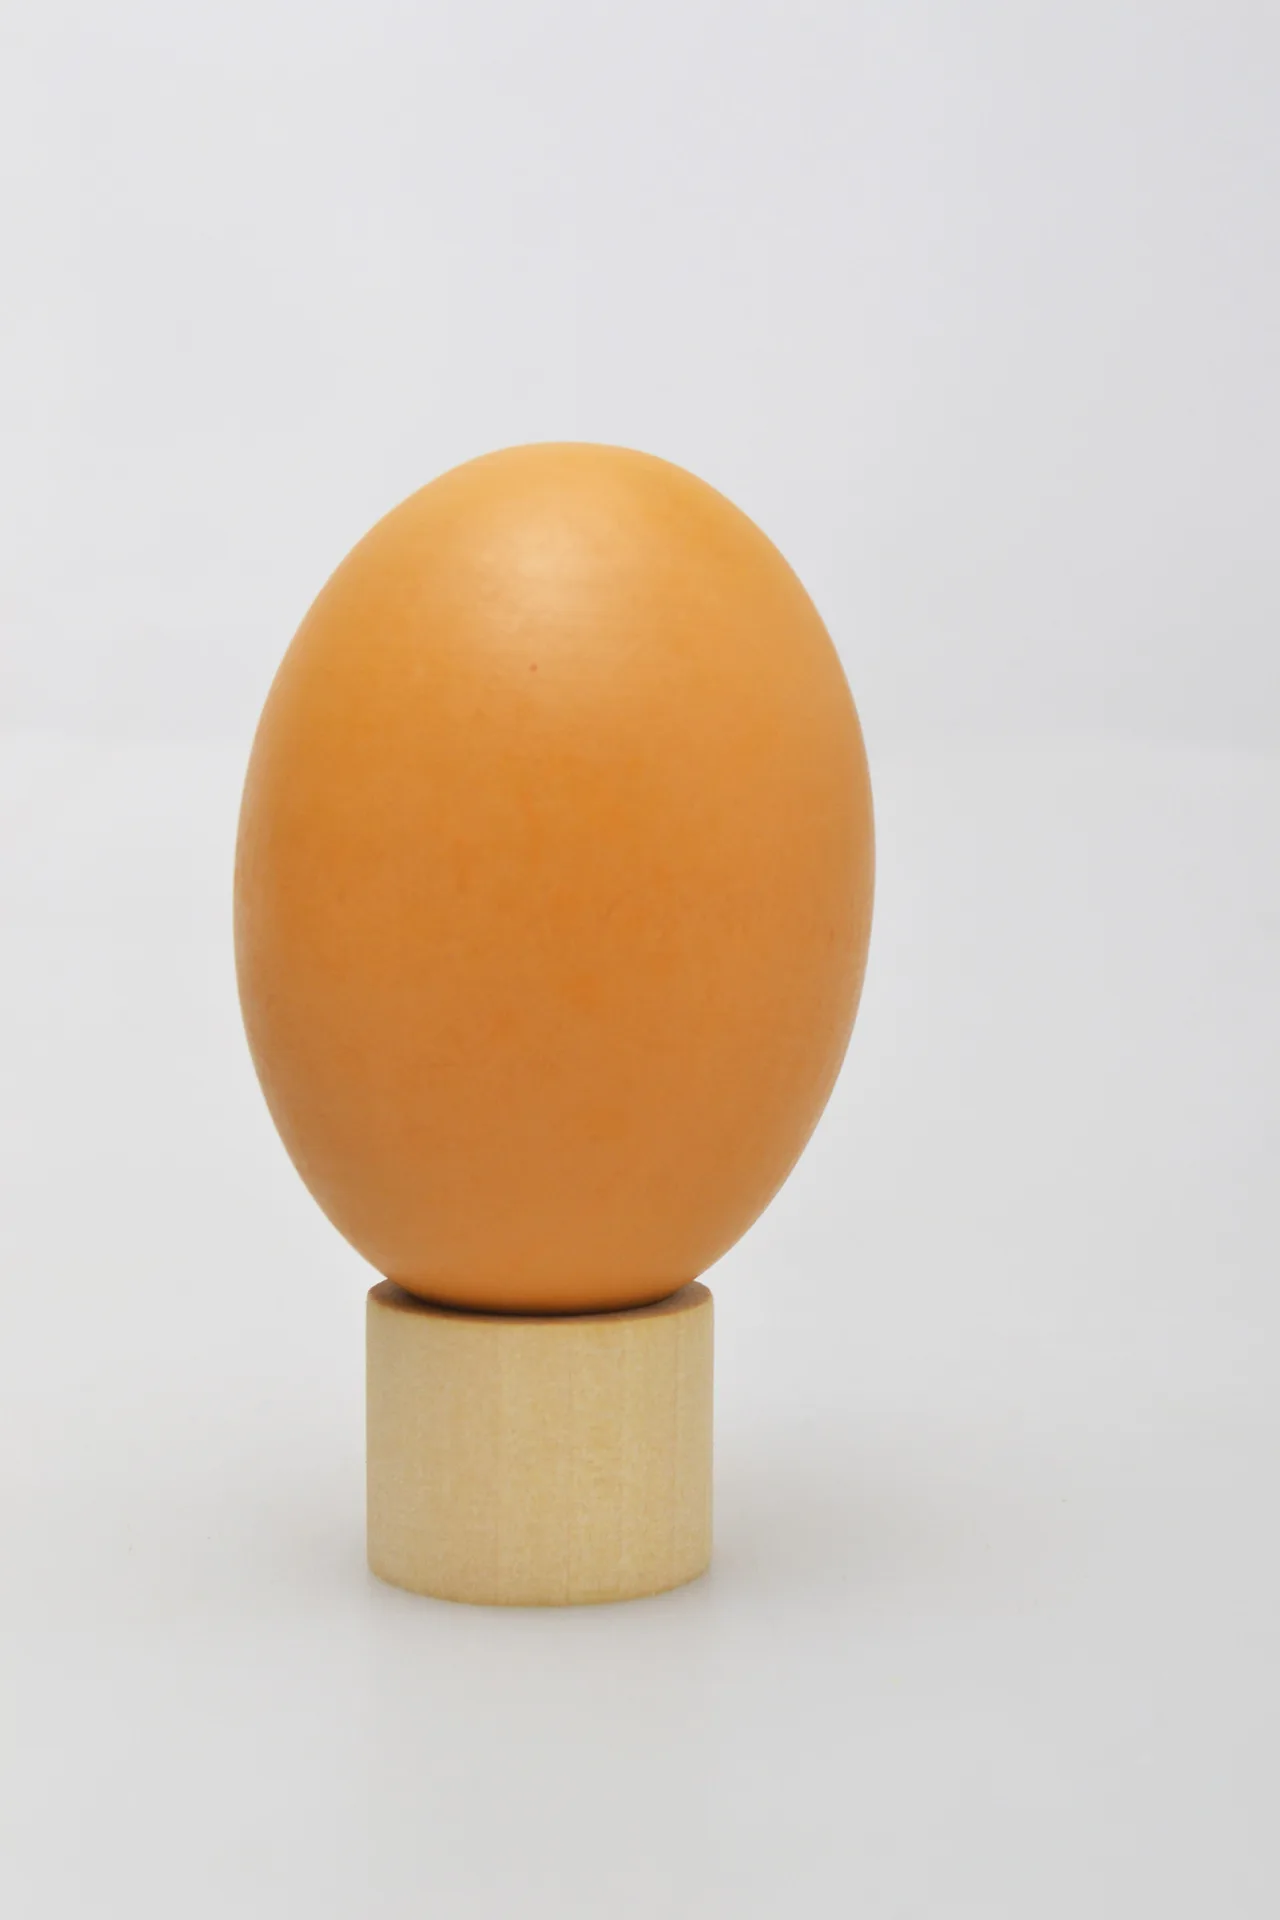 От производителя деревянная модель яйцо трюк белый зеленая утка яйца дети играть дом игрушки еда реквизит